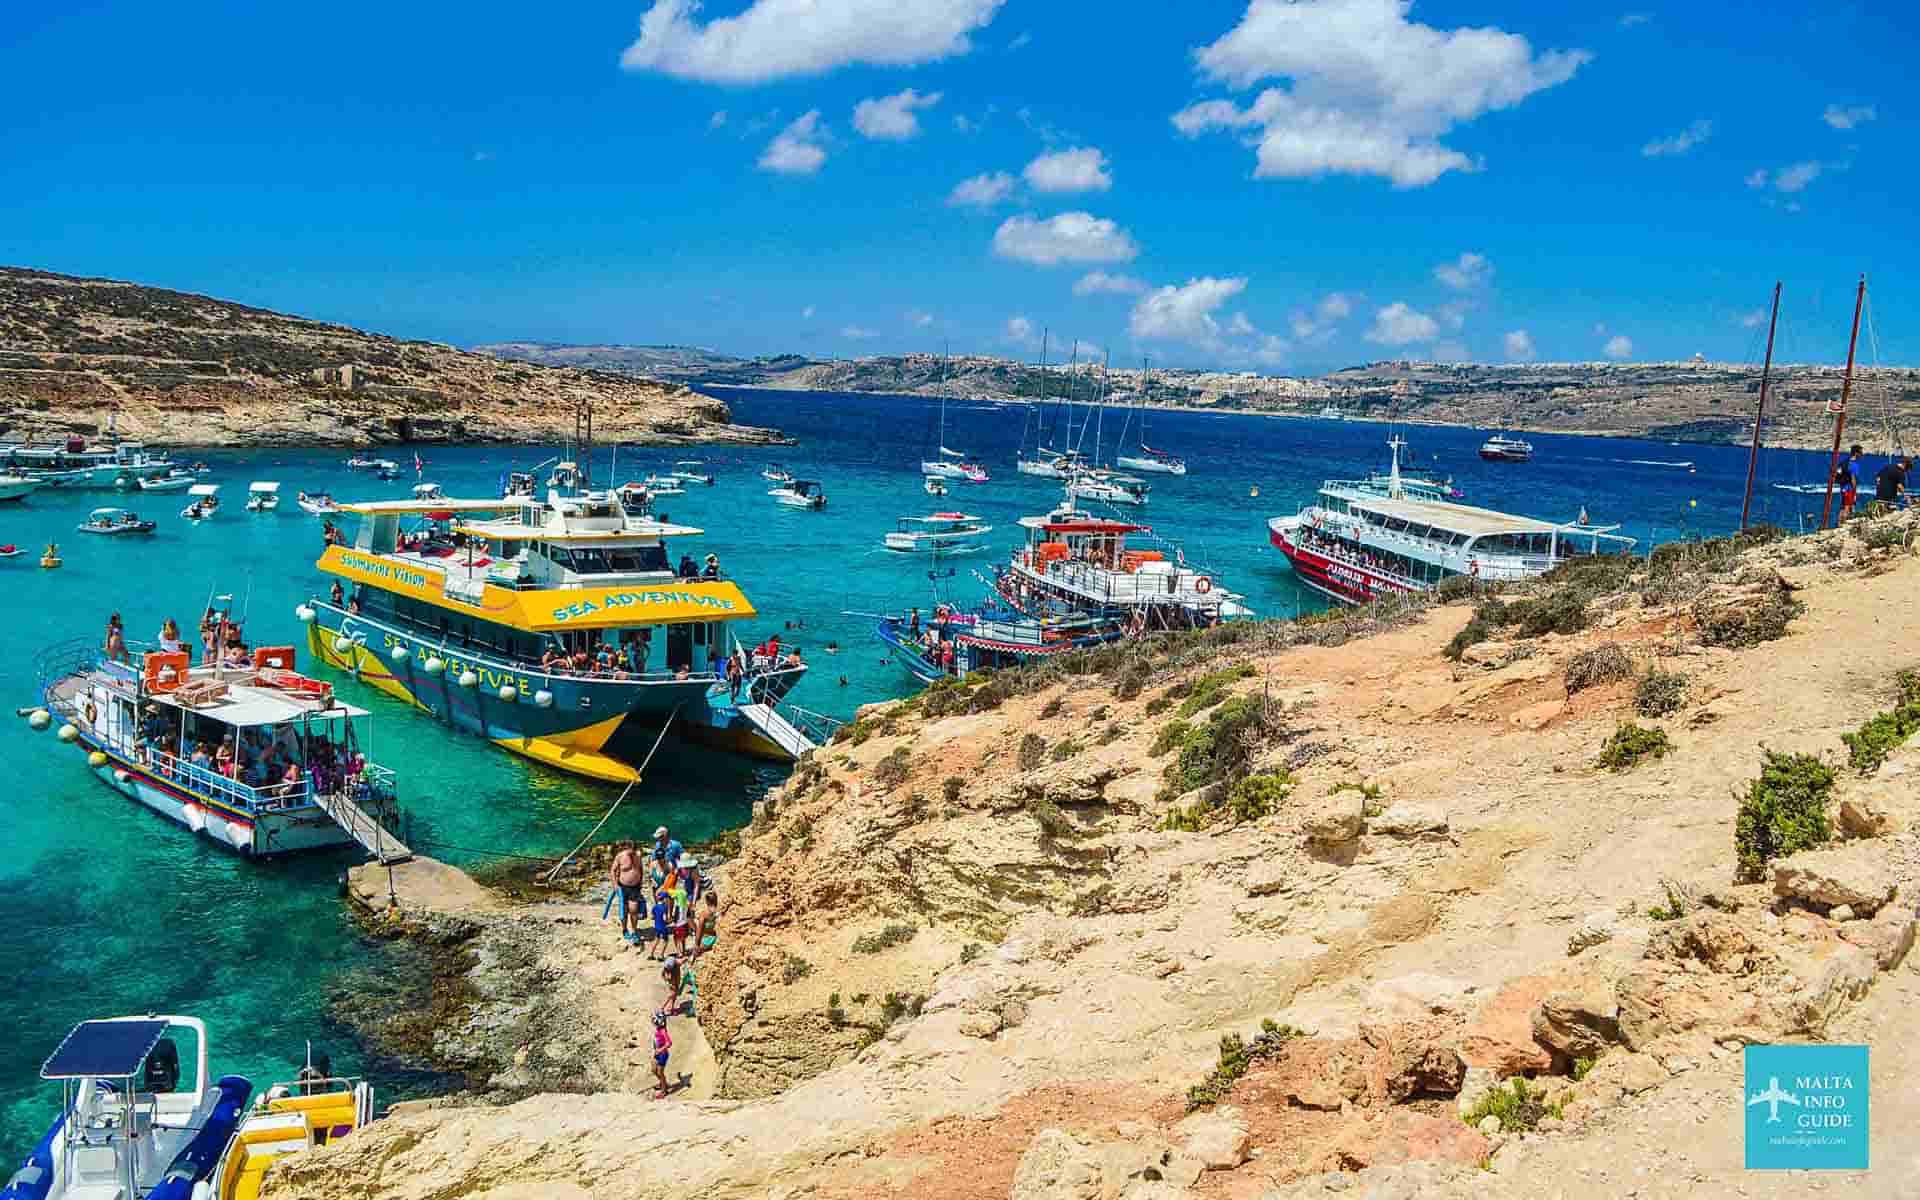 Several tour boats moored at Blue Lagoon Malta.